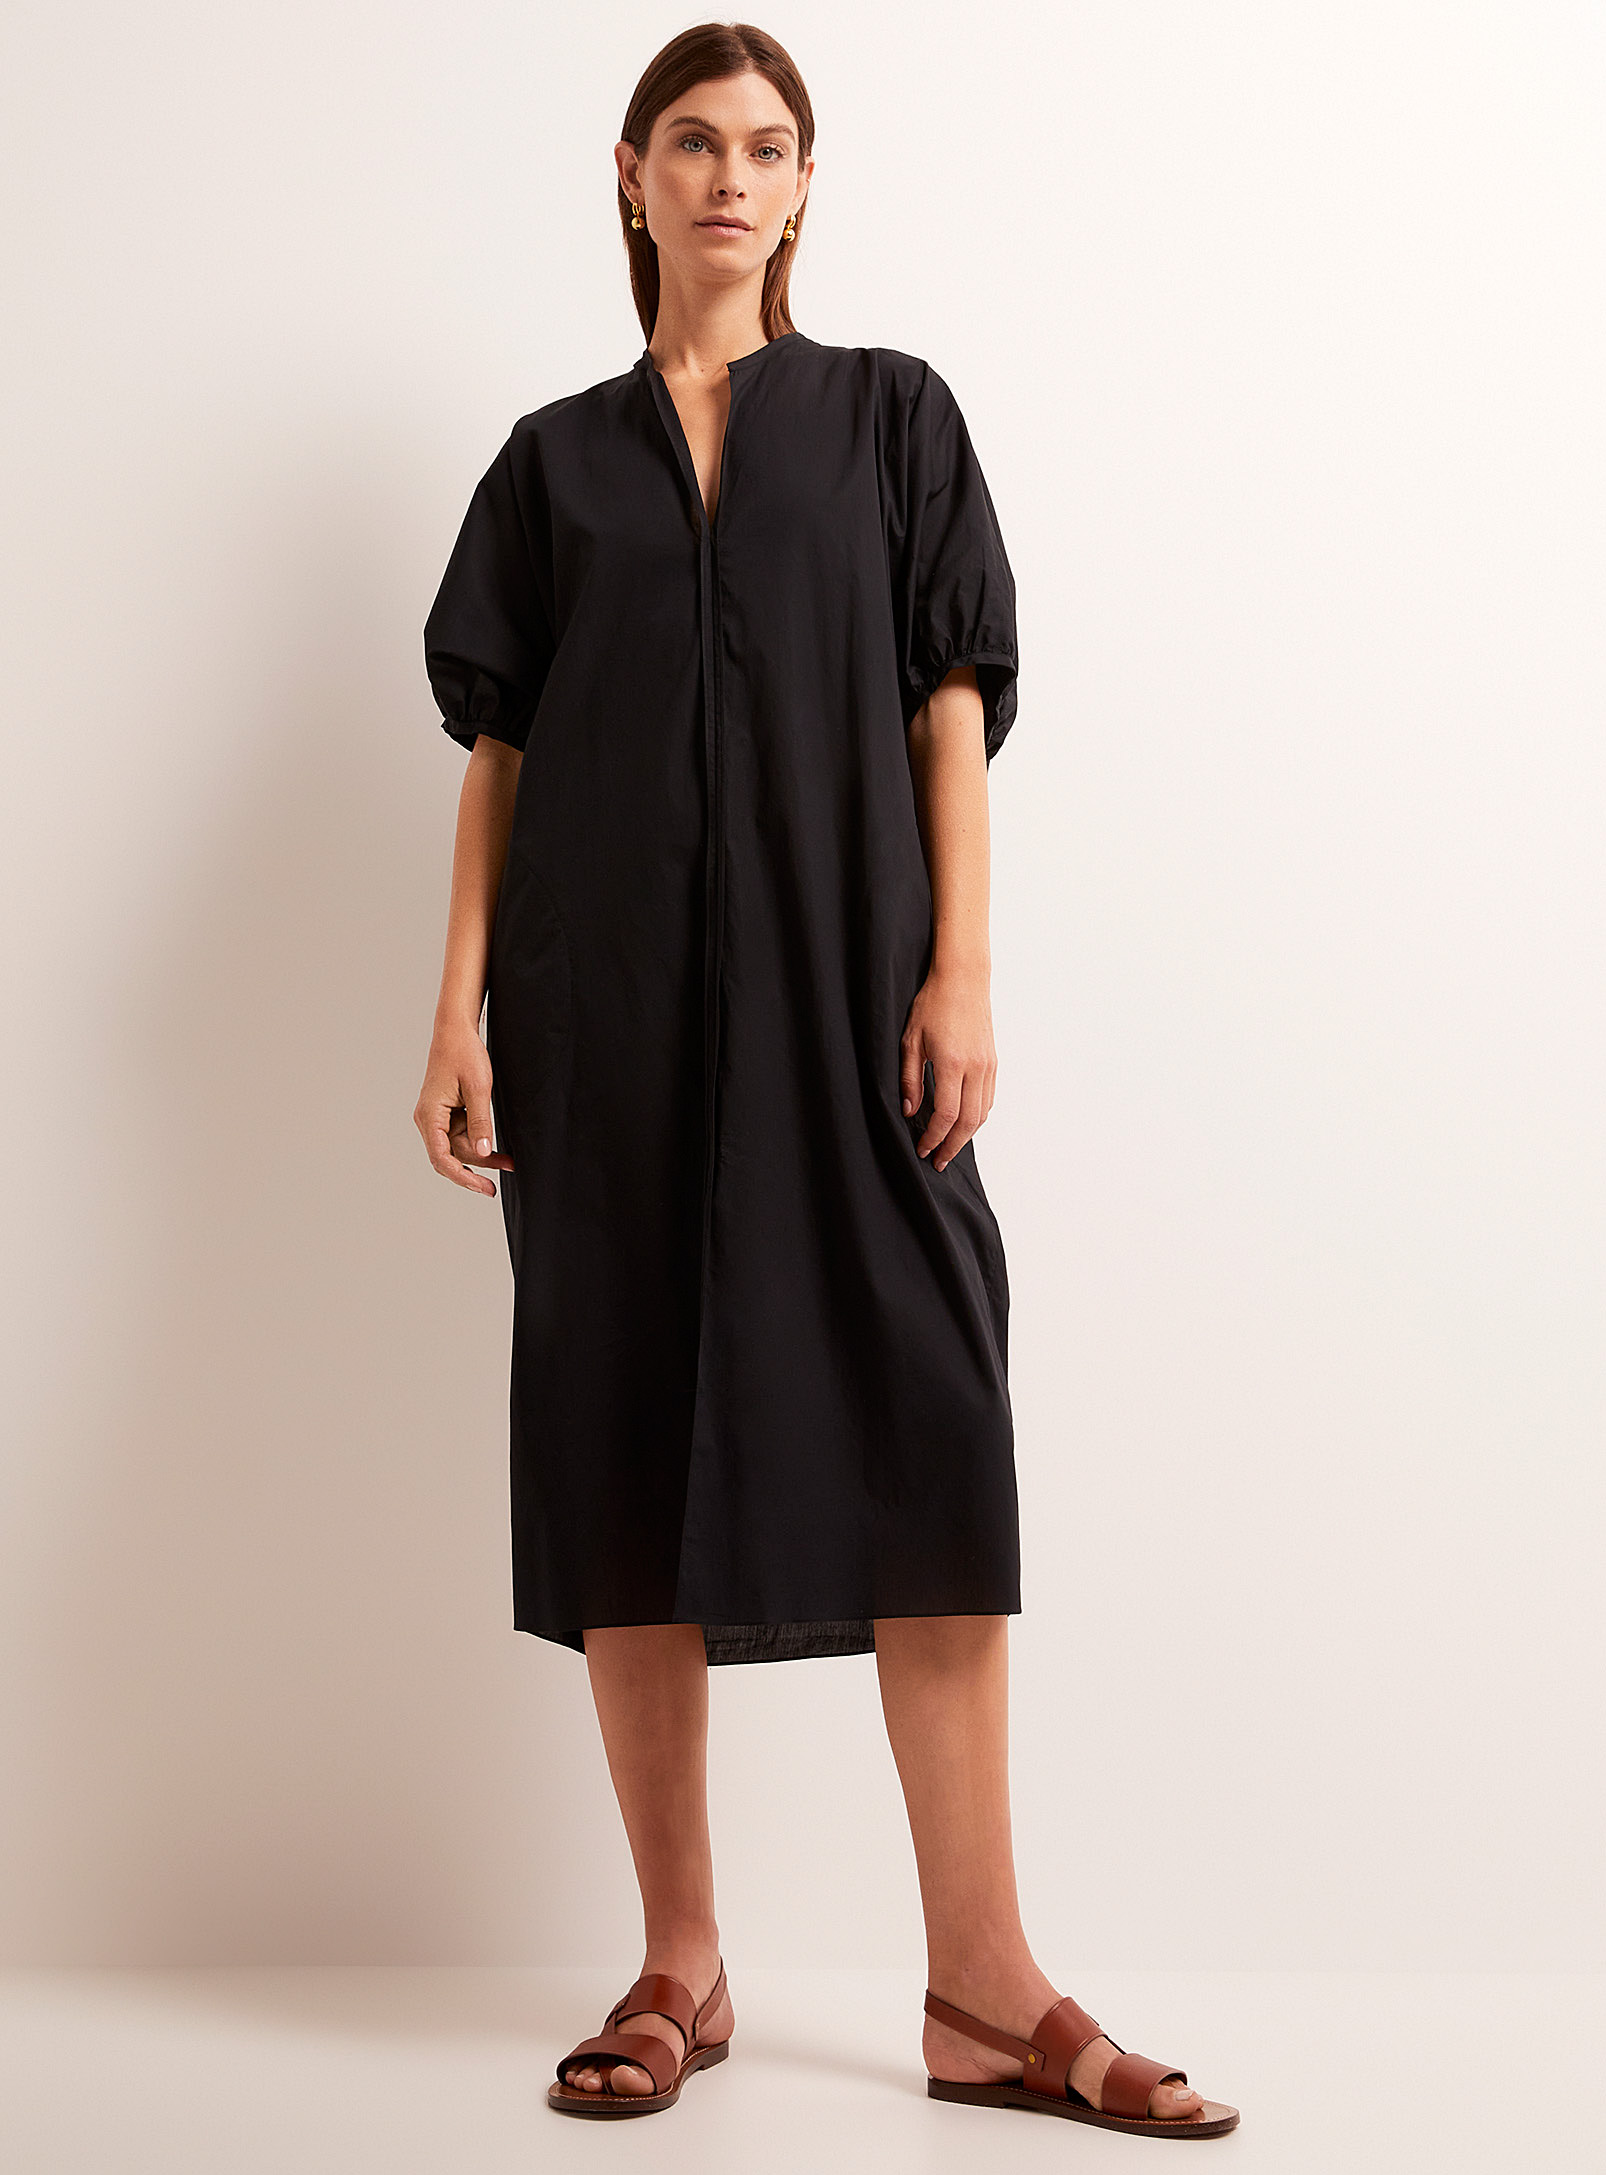 Soeur - Women's Alger loose black poplin dress